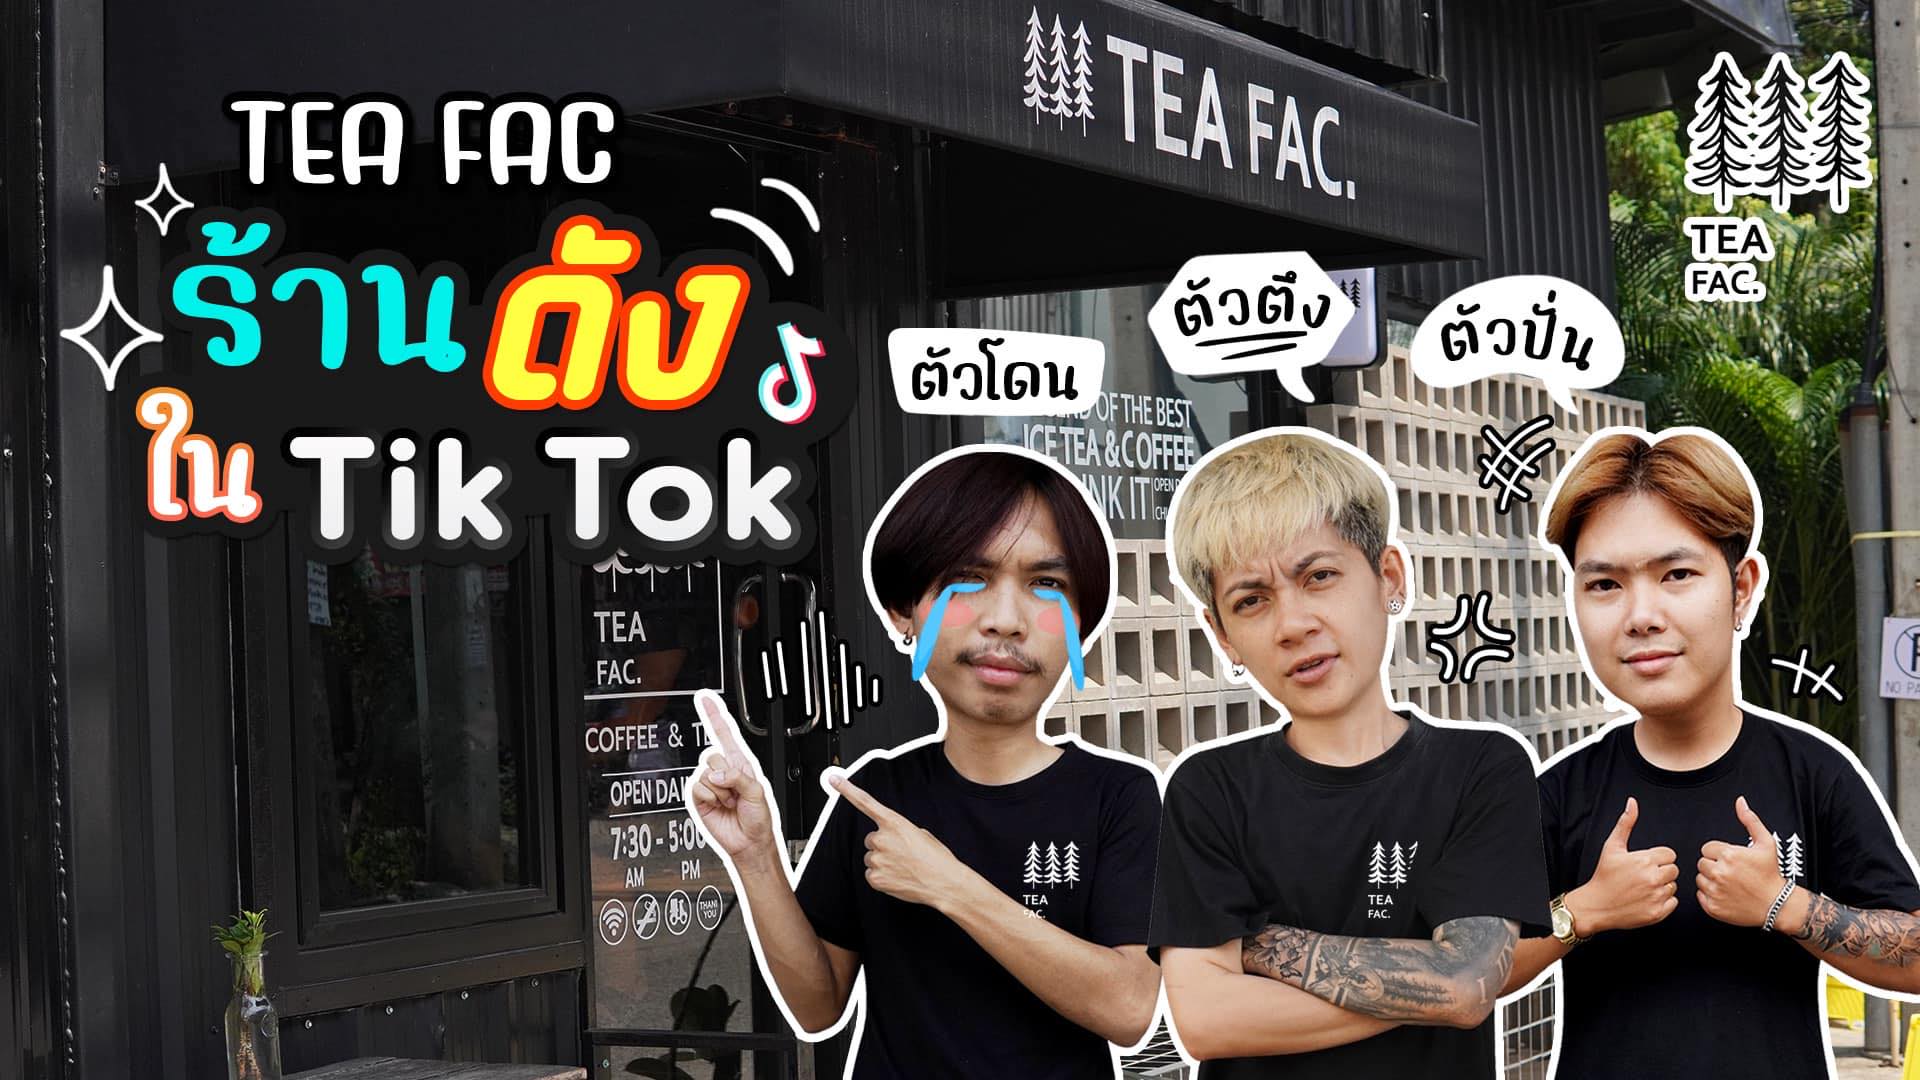 TEA FAC ร้านดังใน TikTok teafac สันติธรรม เชียงใหม่ ร้านกาแฟเน้น content ต้องมาก่อน